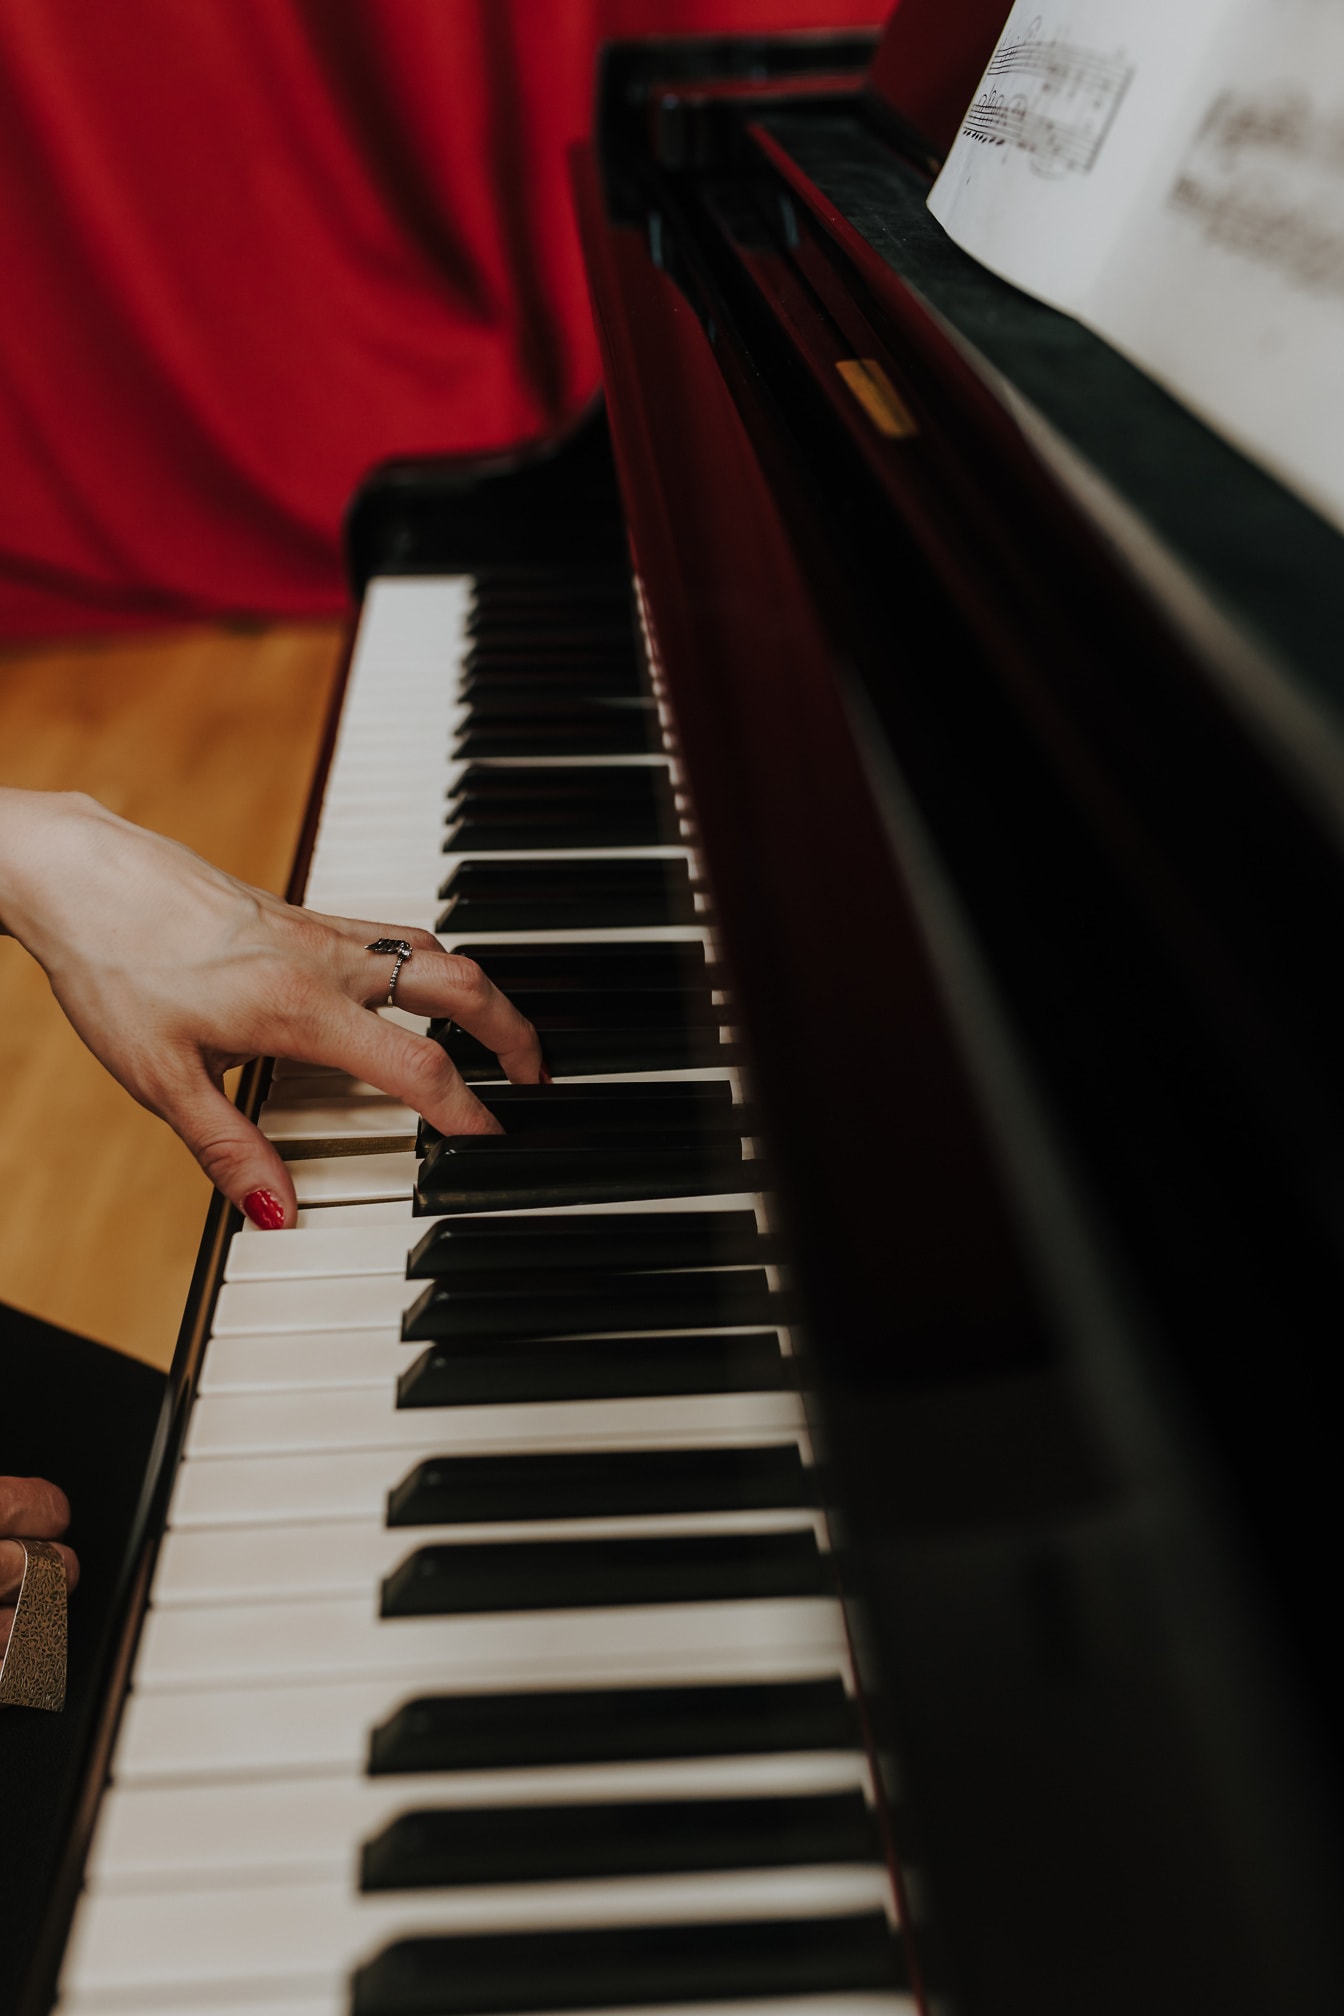 Närbild av handen med guldring och rött nagellack som spelar piano